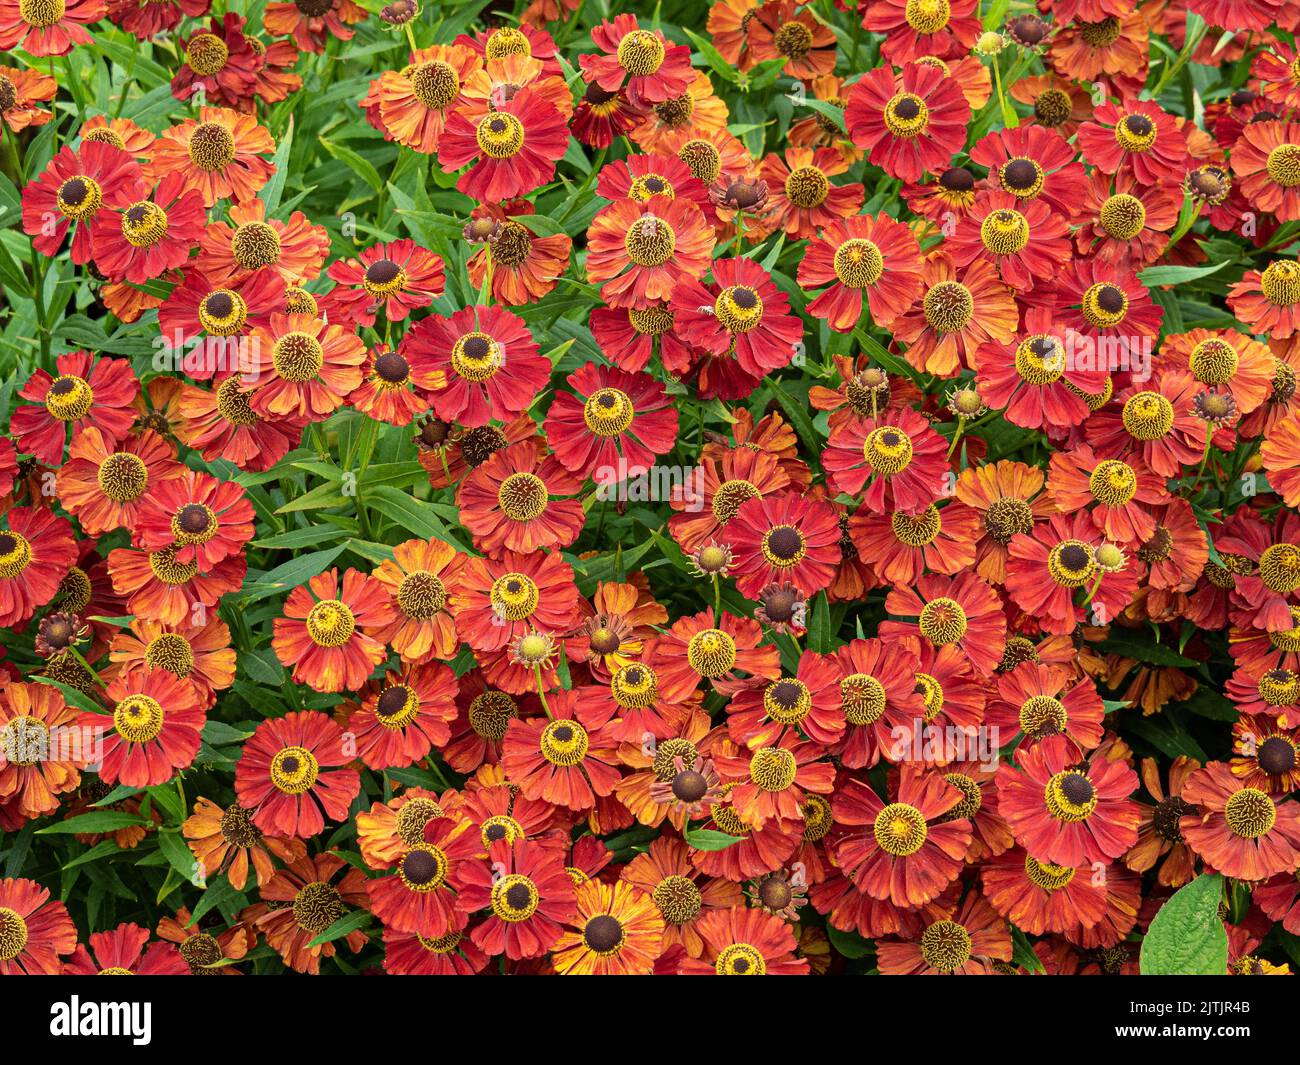 The deep mahogany red flowers of Helenium 'Rubinzwerg' Stock Photo